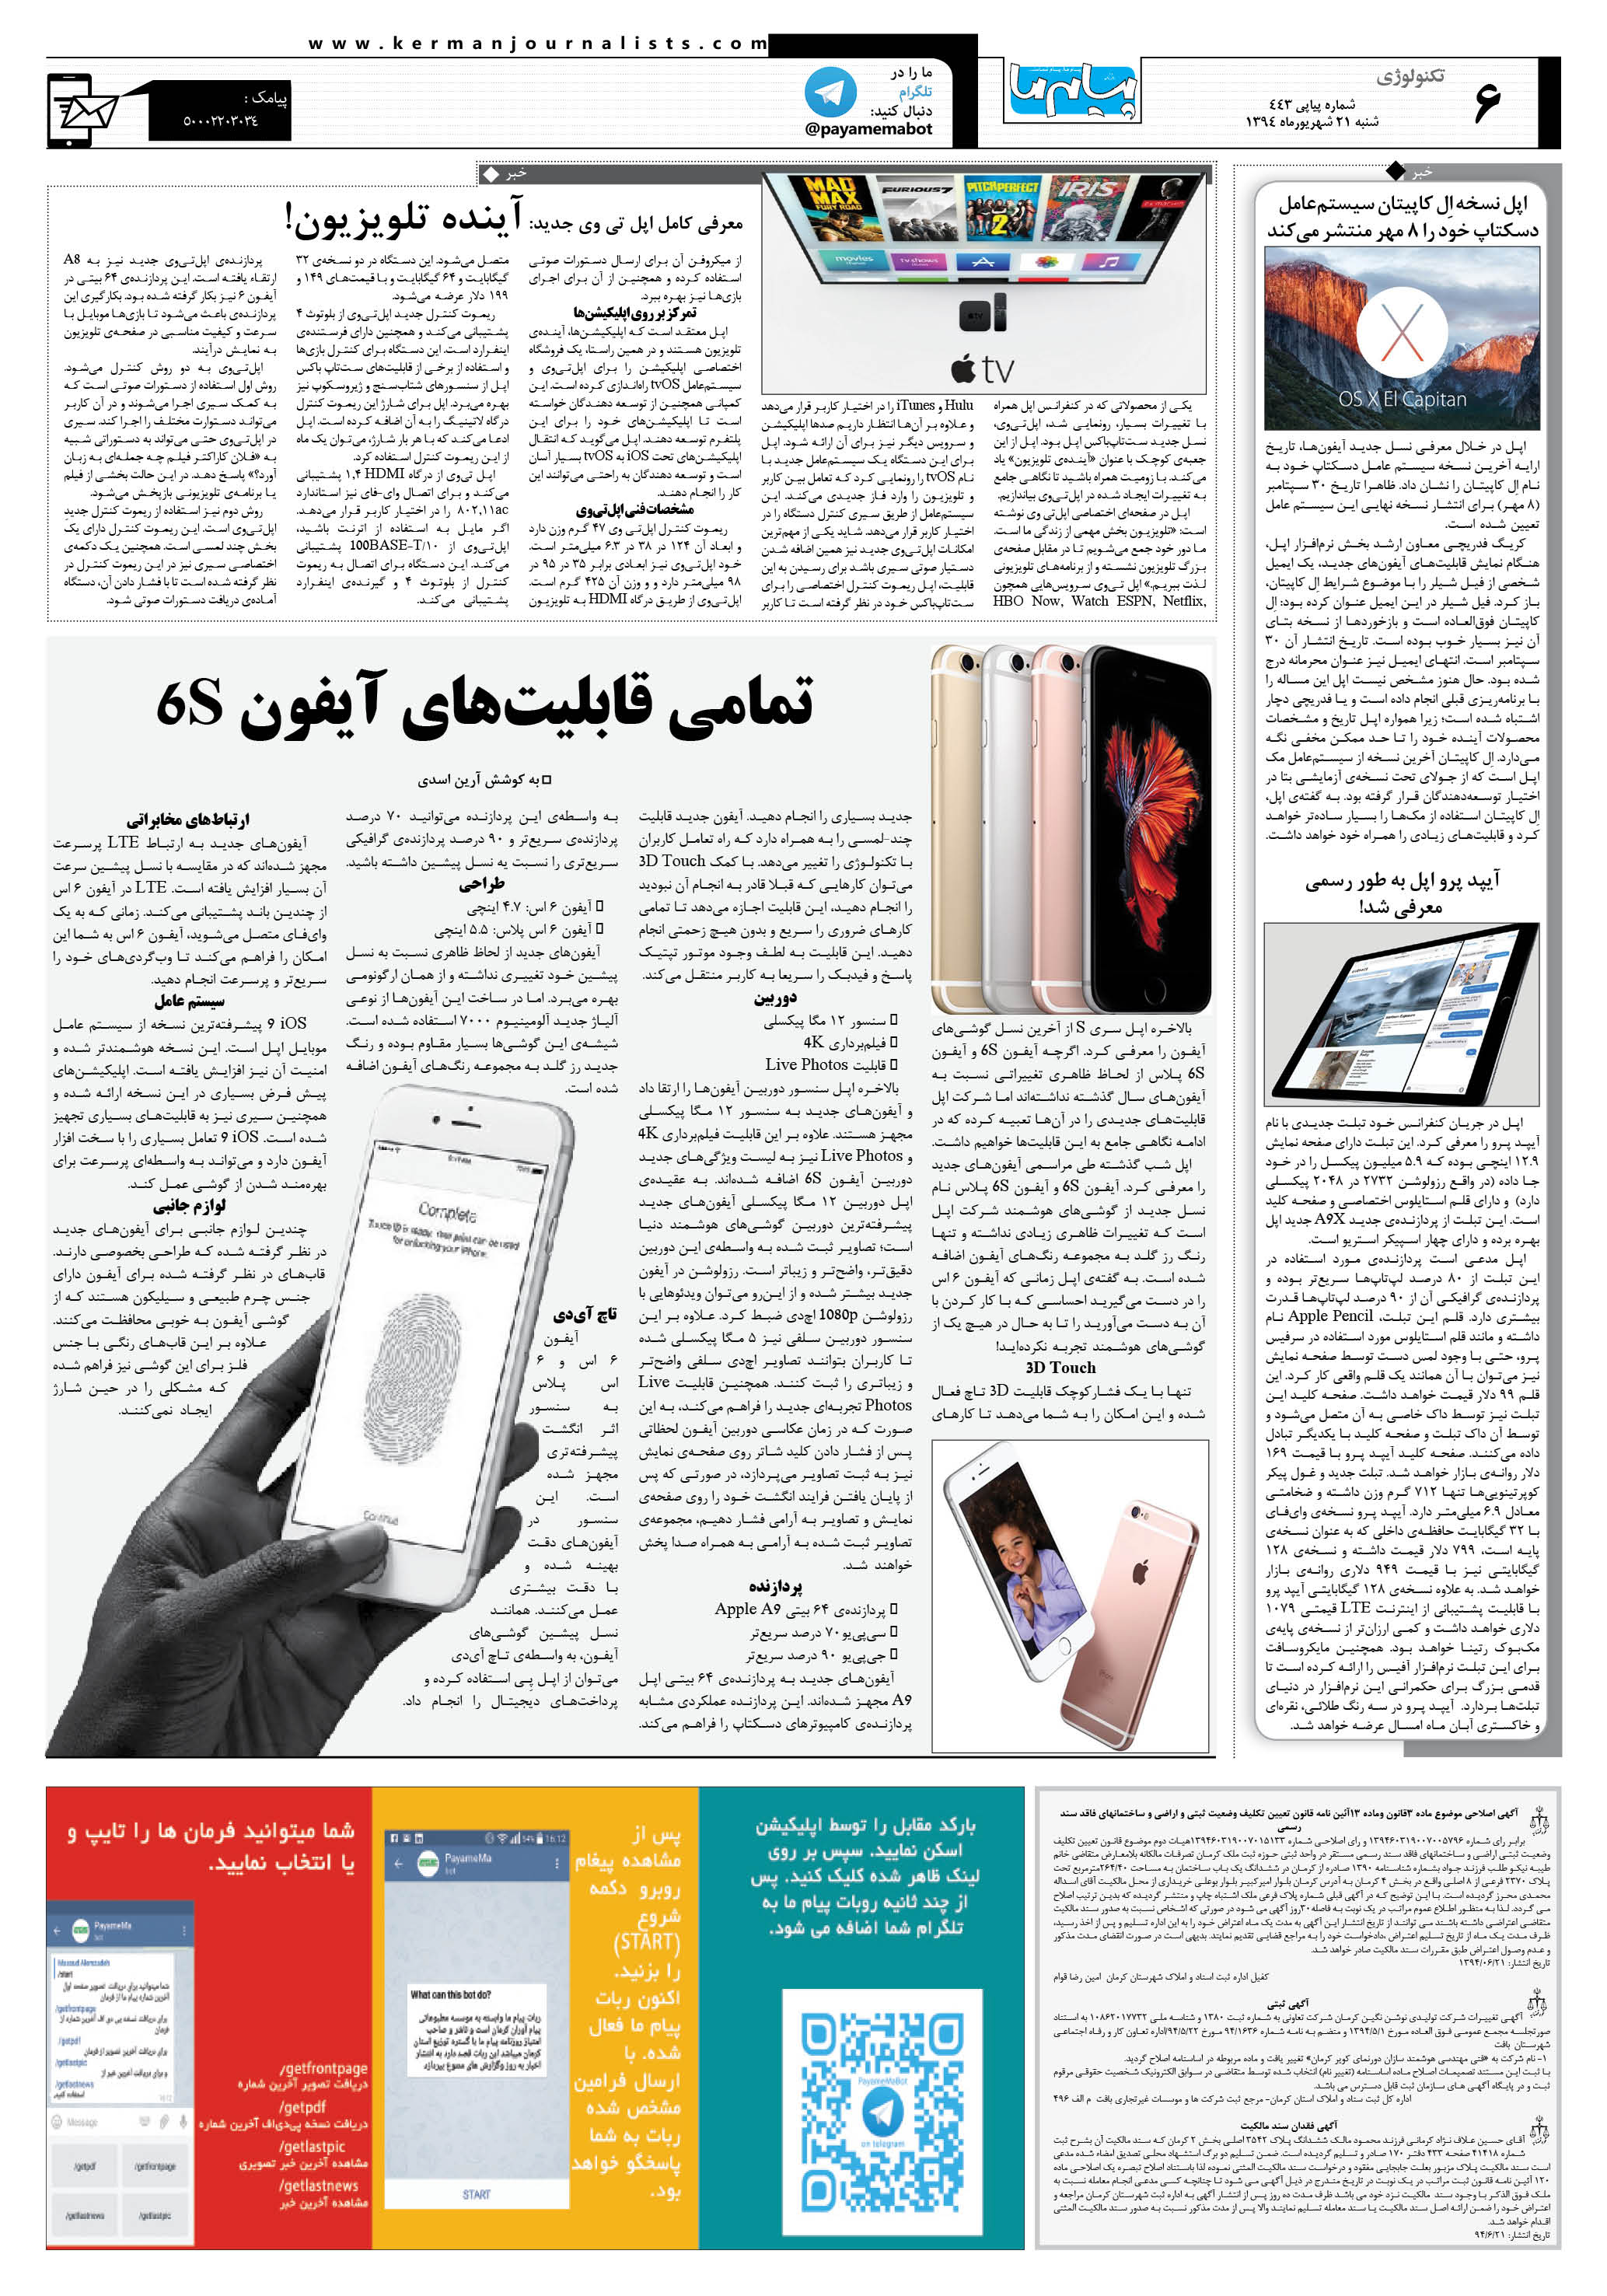 صفحه تکنولوژی شماره 443 روزنامه پیام ما